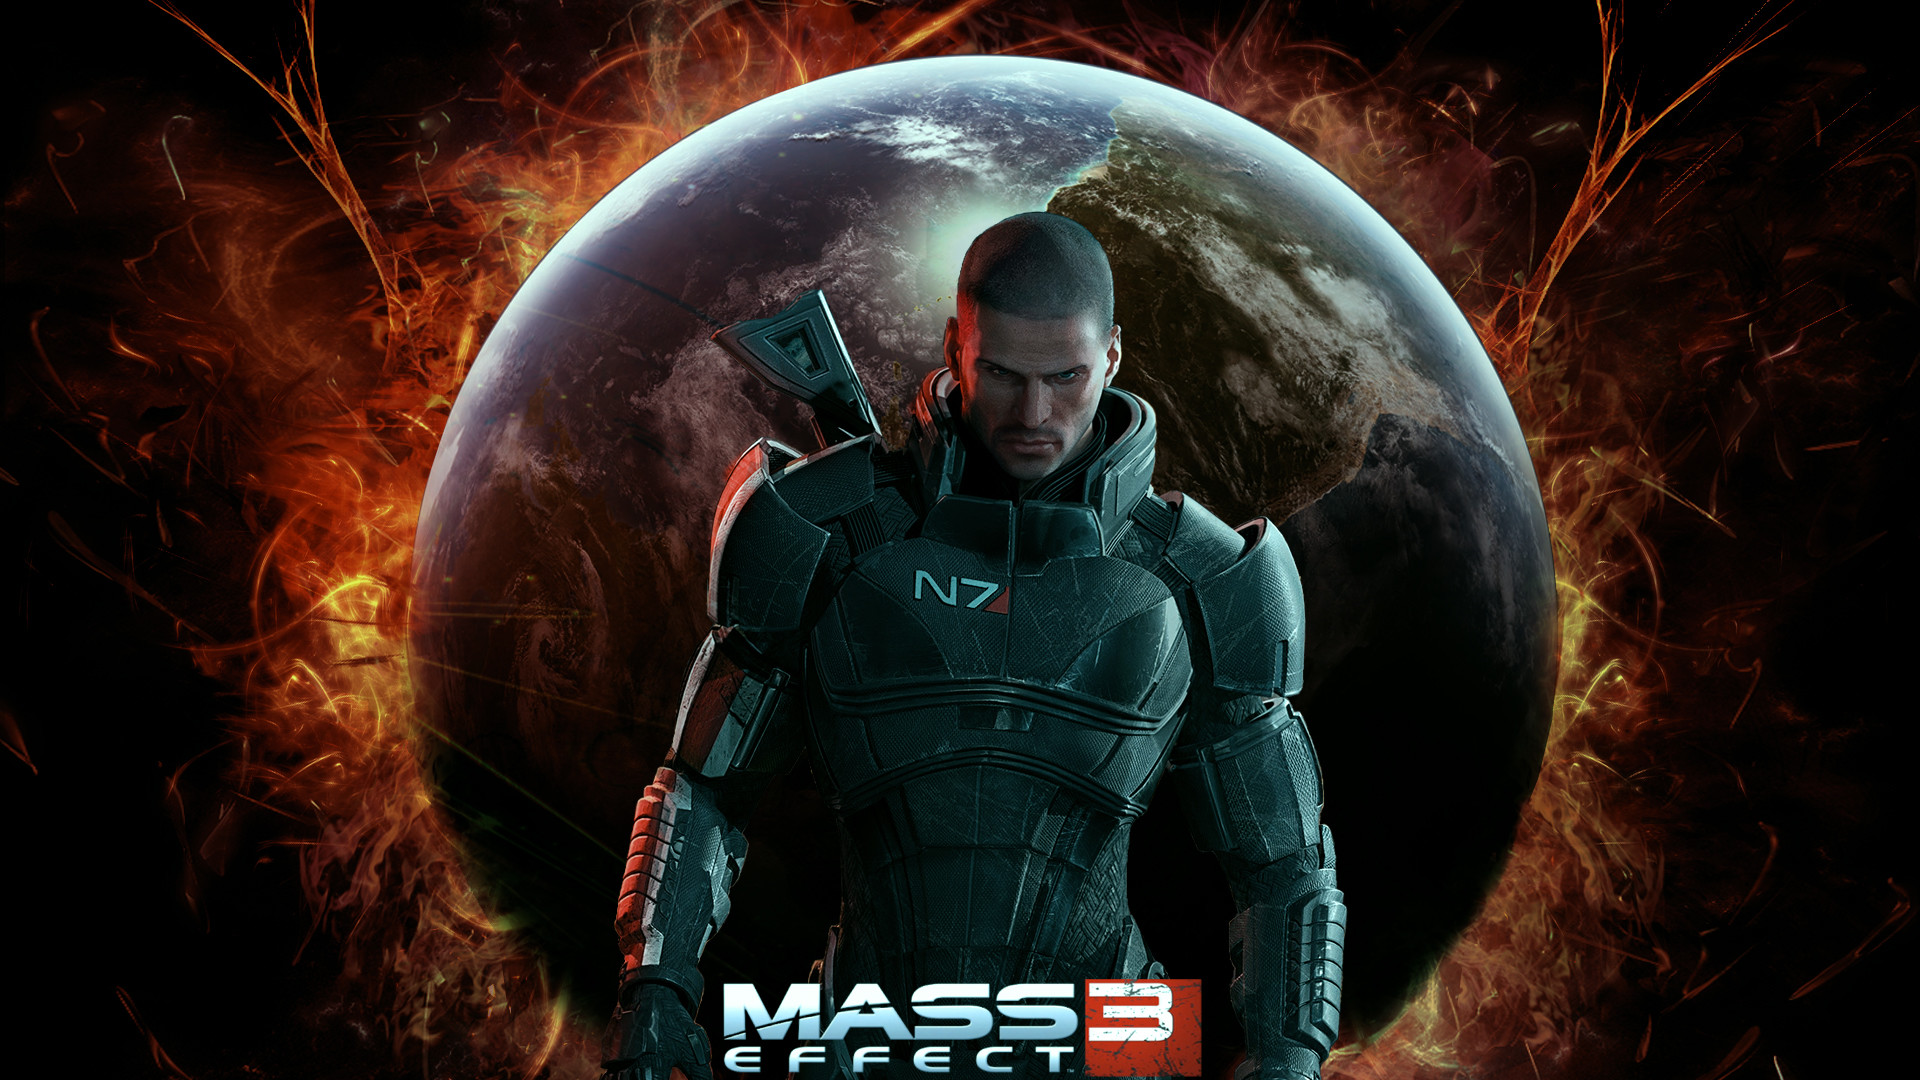 Mass Effect 3 War for Earth by nighthawk76